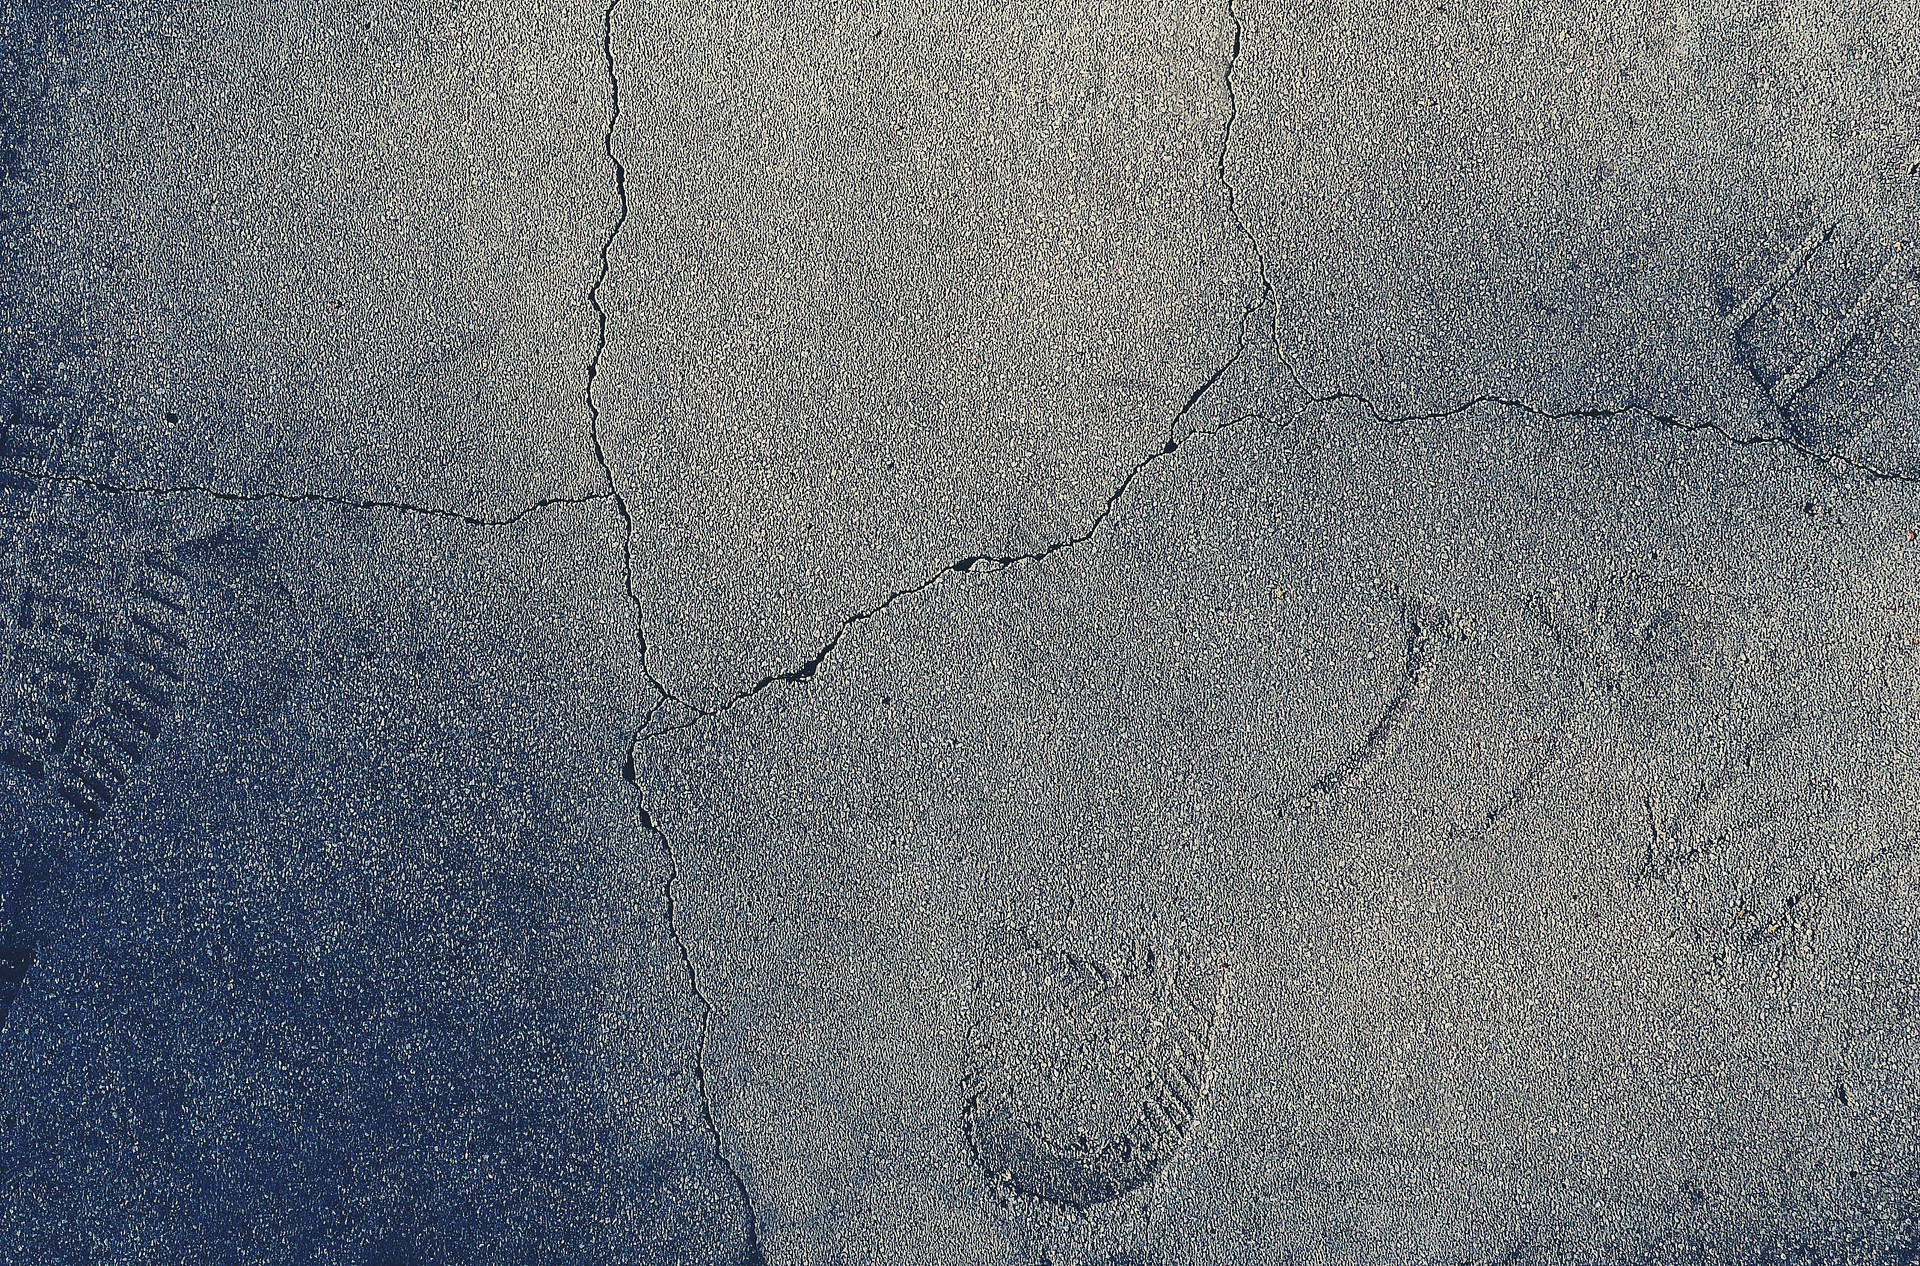 Concrete Texture Footprints On Cement Wallpaper